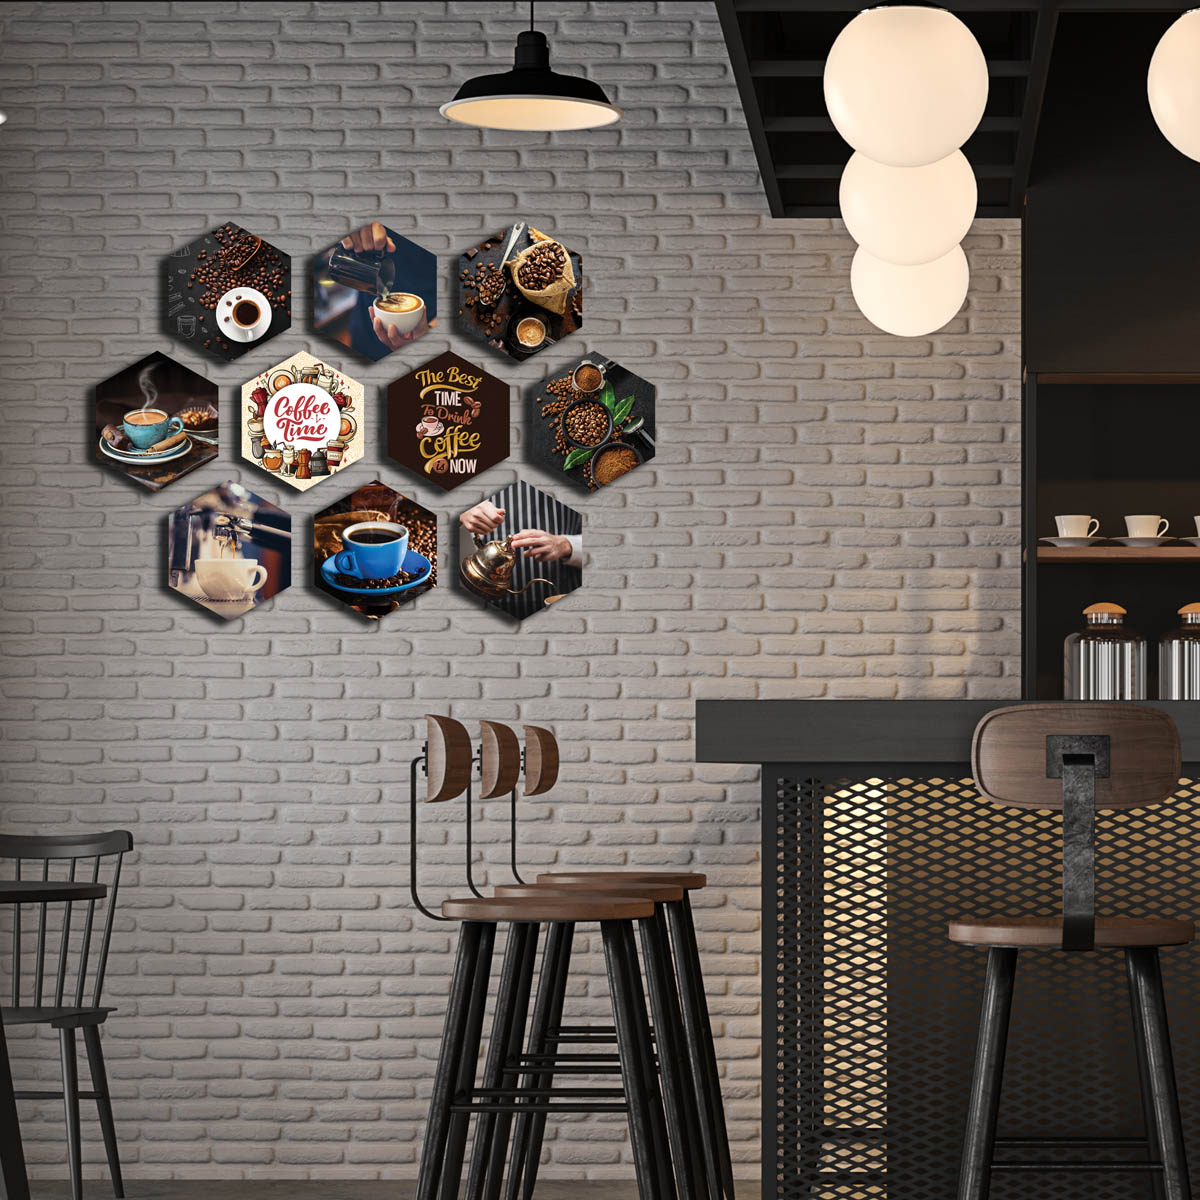 Vũ Khí Decor - một giải pháp tuyệt vời để trang trí không gian quán cafe của bạn. Hãy xem qua hình ảnh được đăng tải để tìm thấy những ý tưởng sáng tạo và cách sử dụng vũ khí để tạo nên không gian độc đáo, thu hút khách hàng.